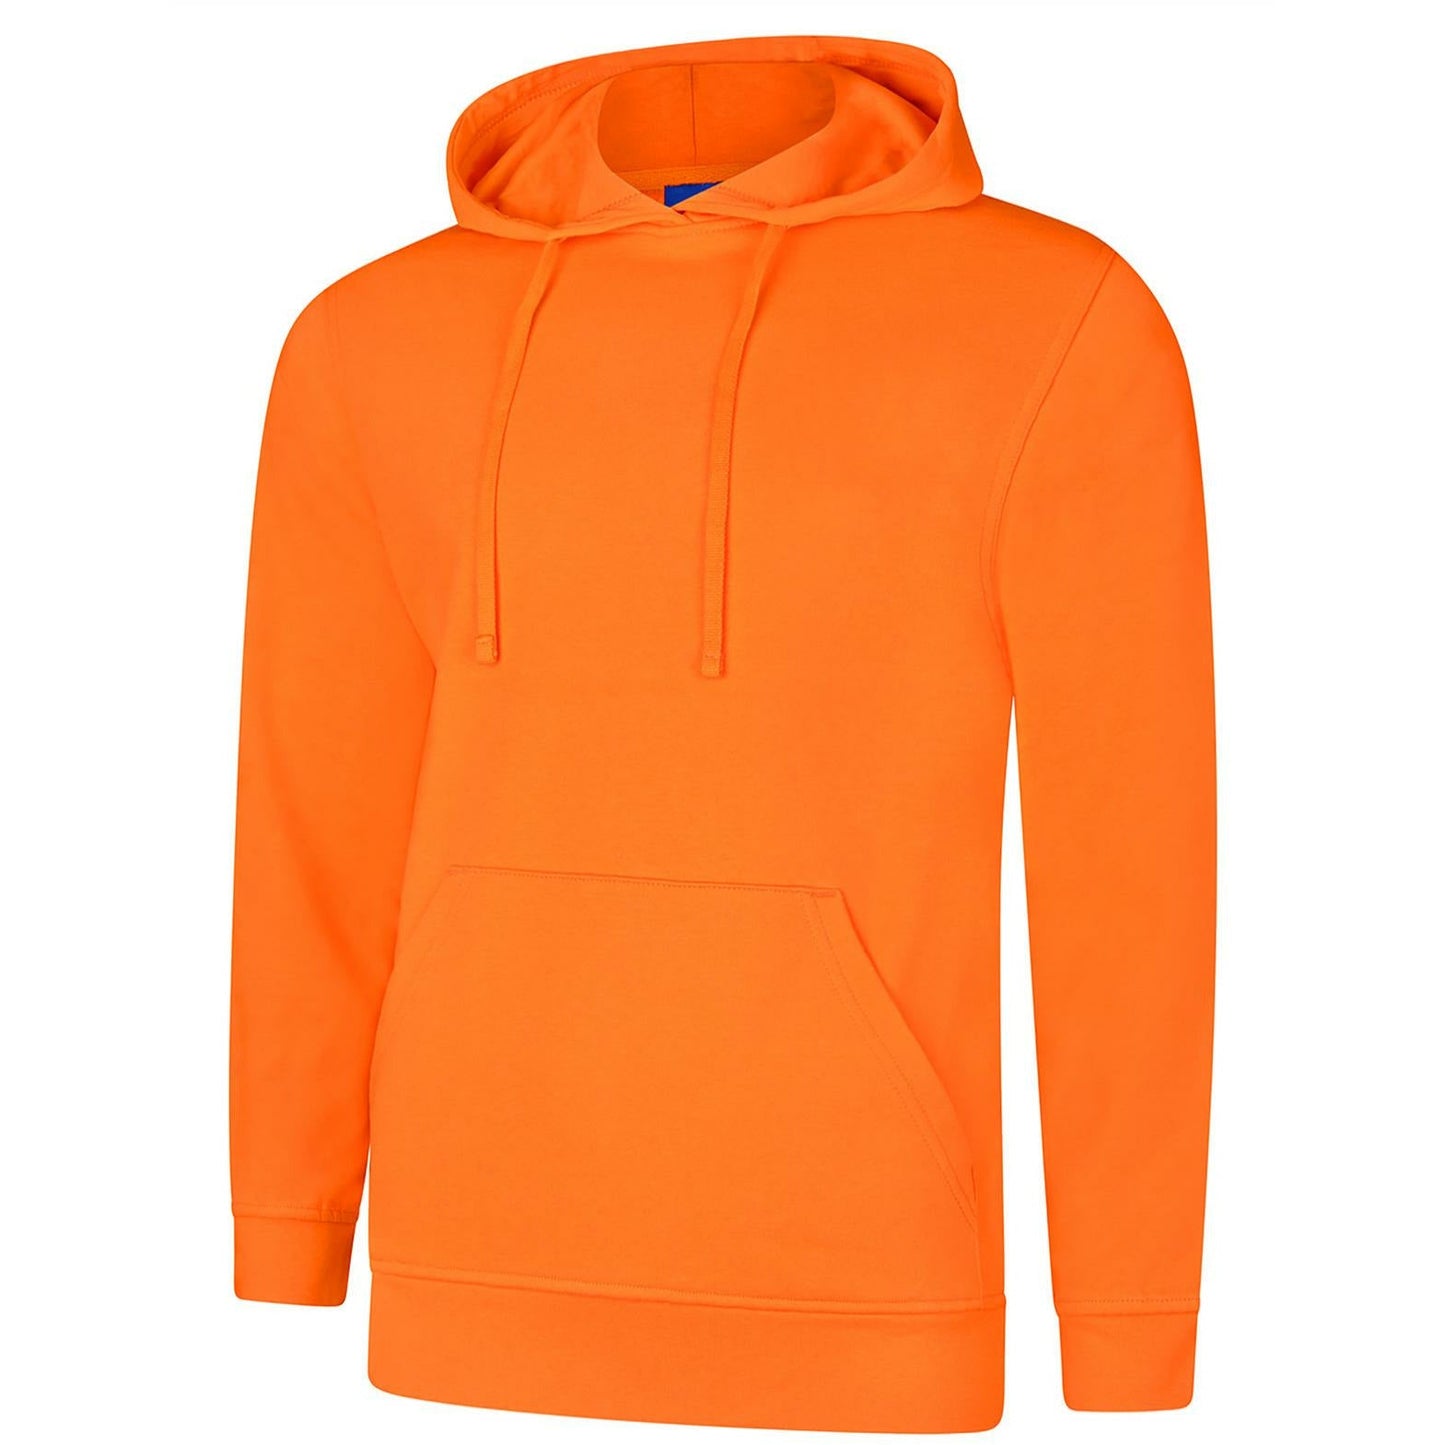 Deluxe Hooded Sweatshirt (XS - M) Orange